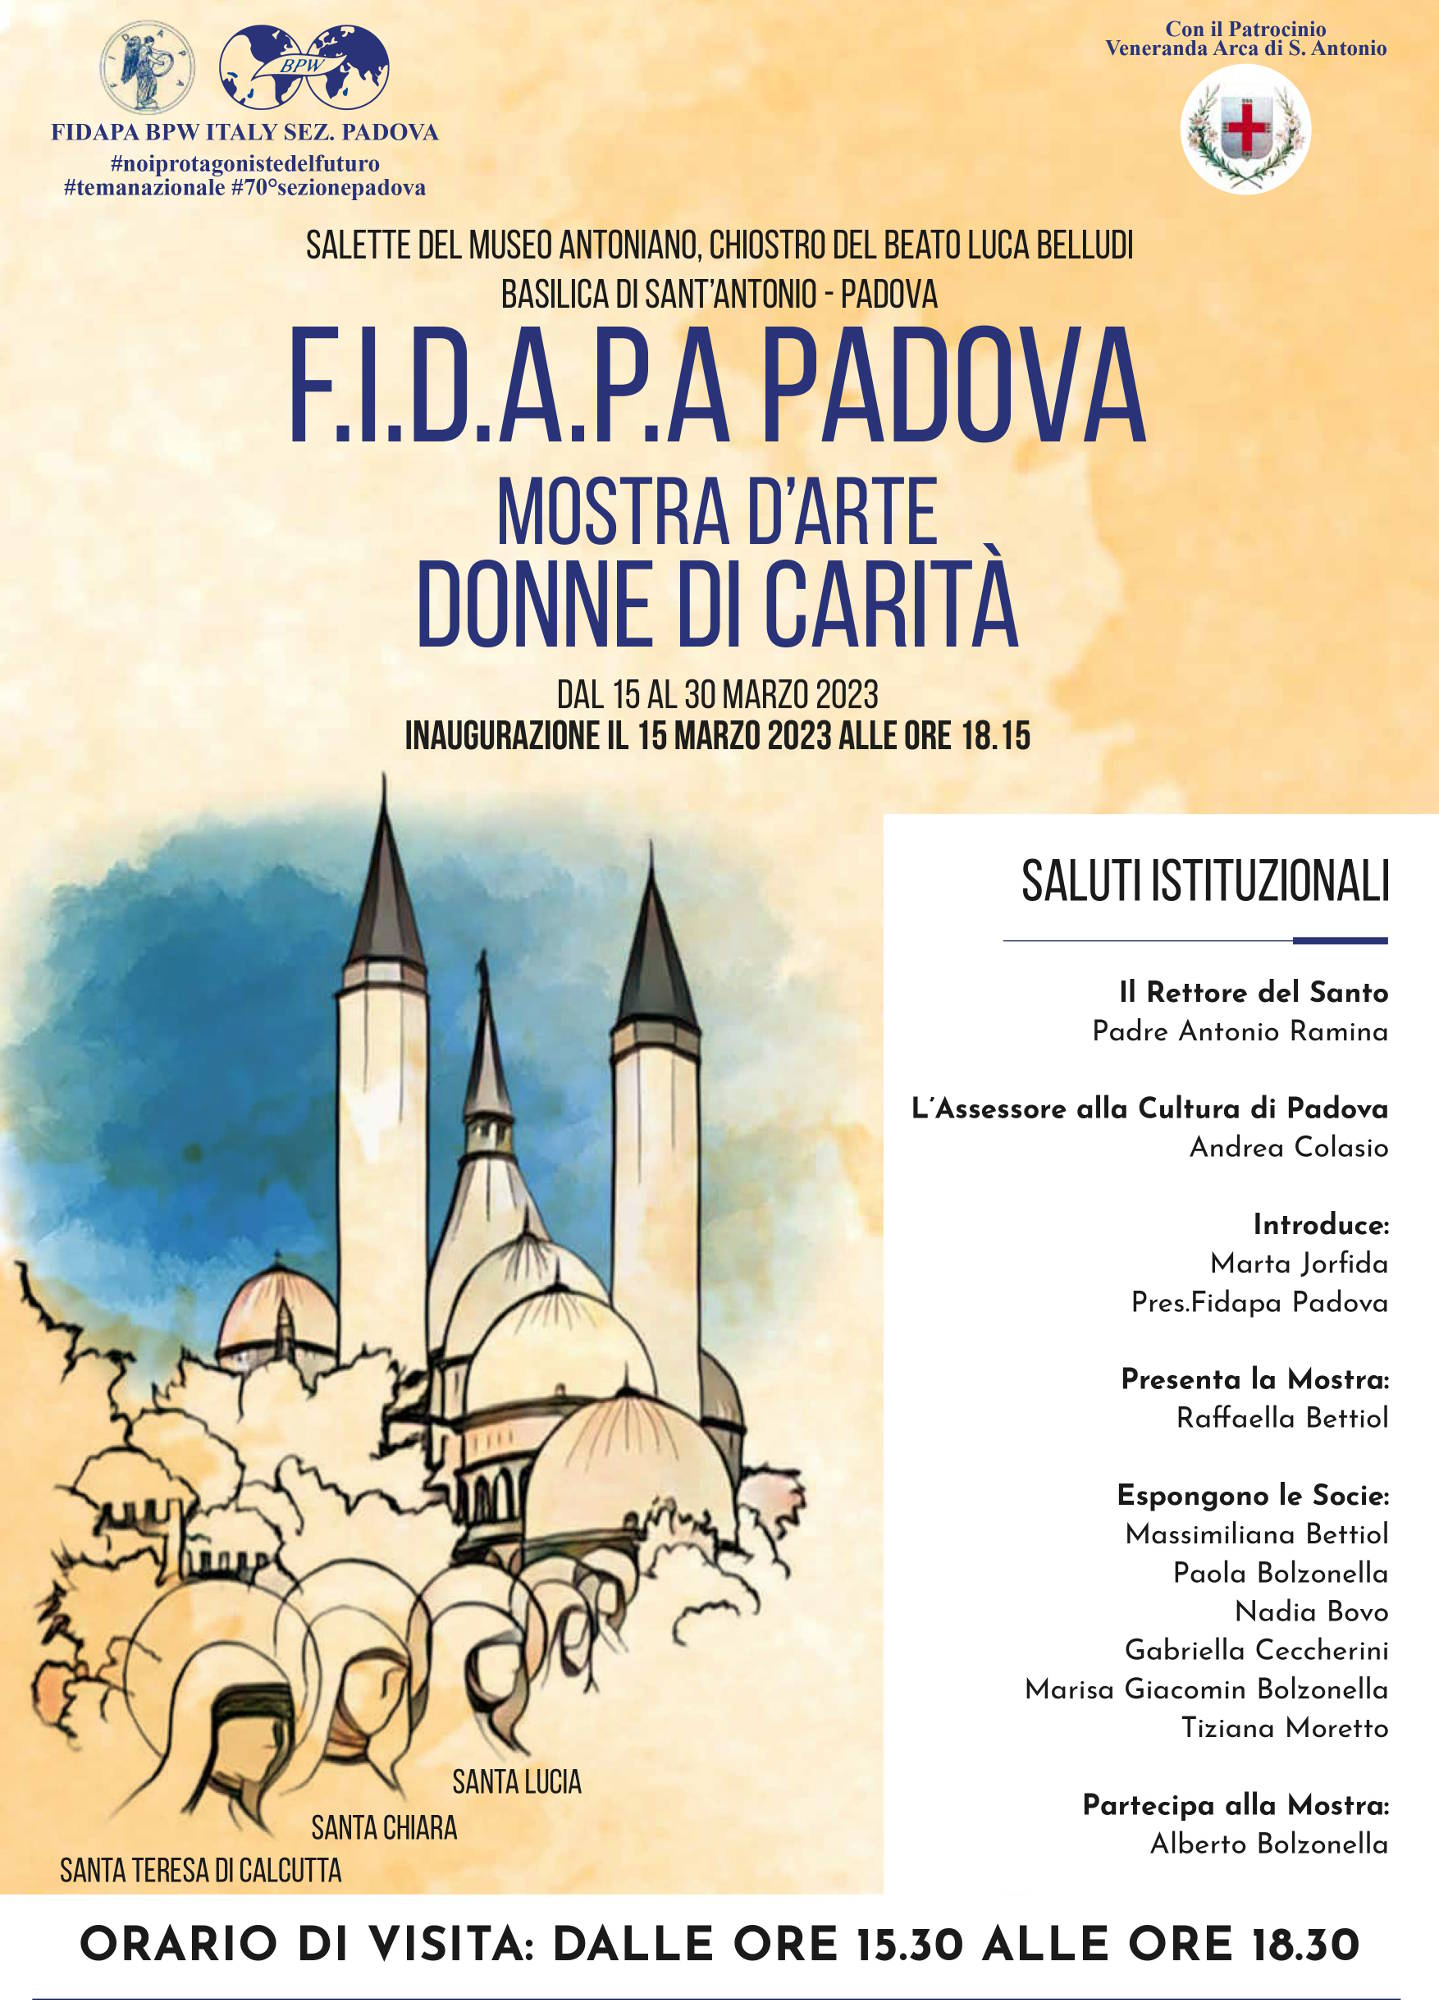 FIDAPA presenta DONNE DI CARITÀ, mostra nelle Salette del Museo Antoniano  nel Chiostro del Beato Luca Belludi della Basilica del Santo - MeloBox